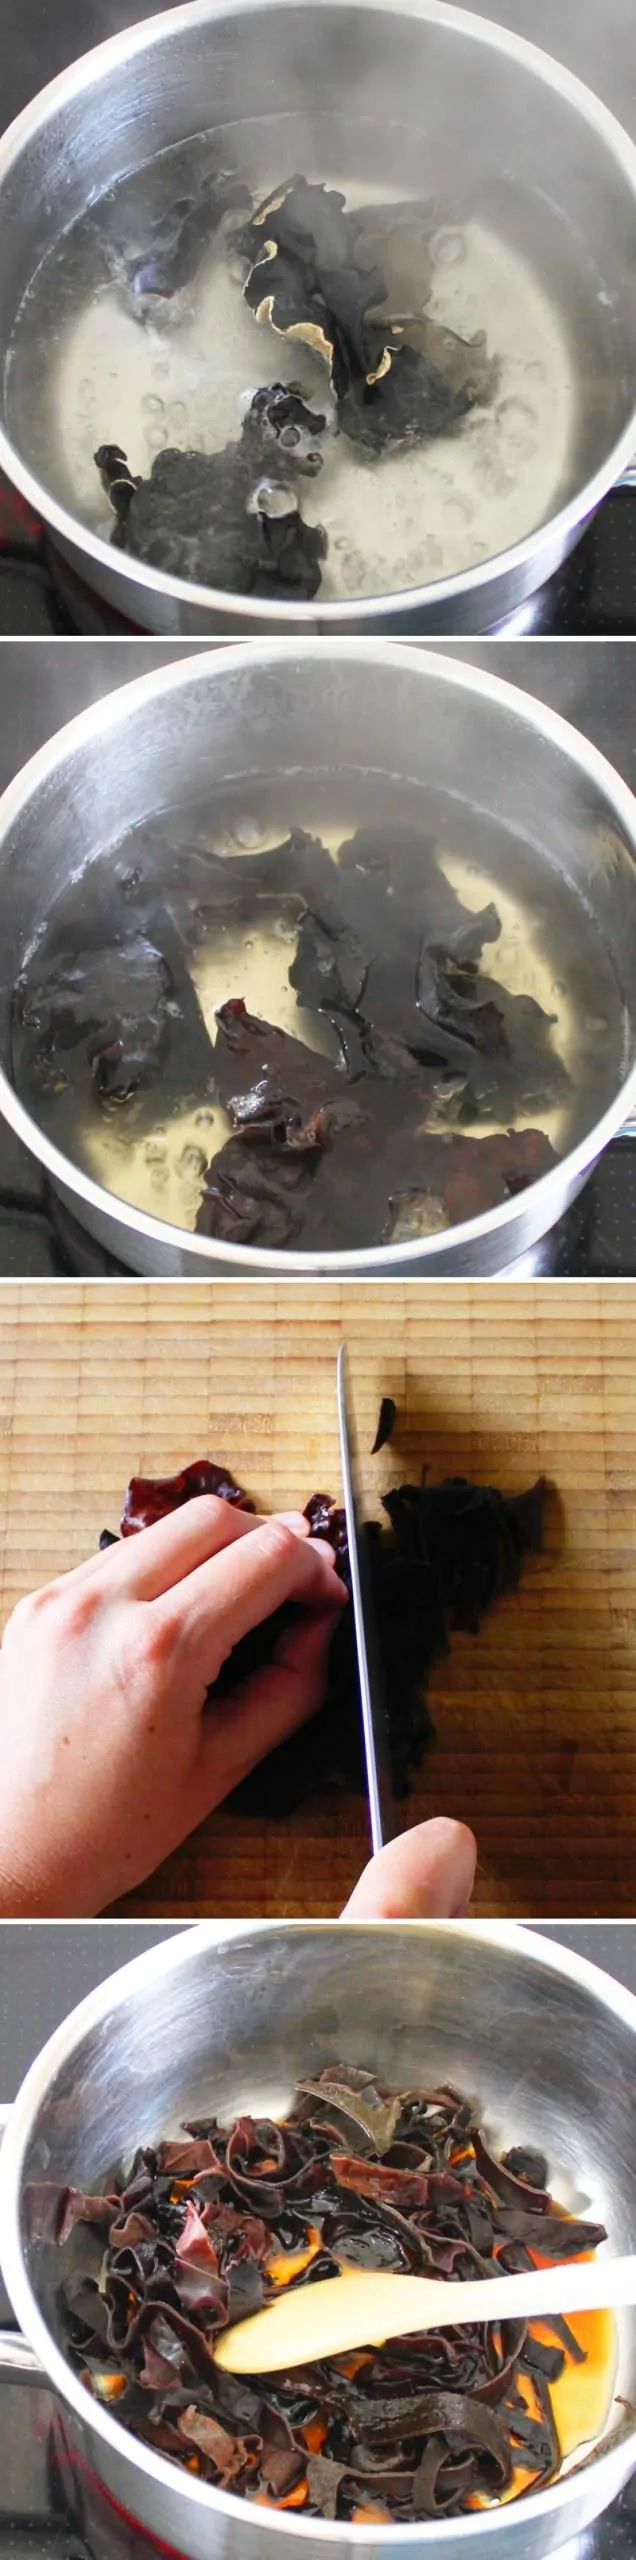 Hakata Ramen Schritt 3 marinierten Black Fungus Pilze zubereiten